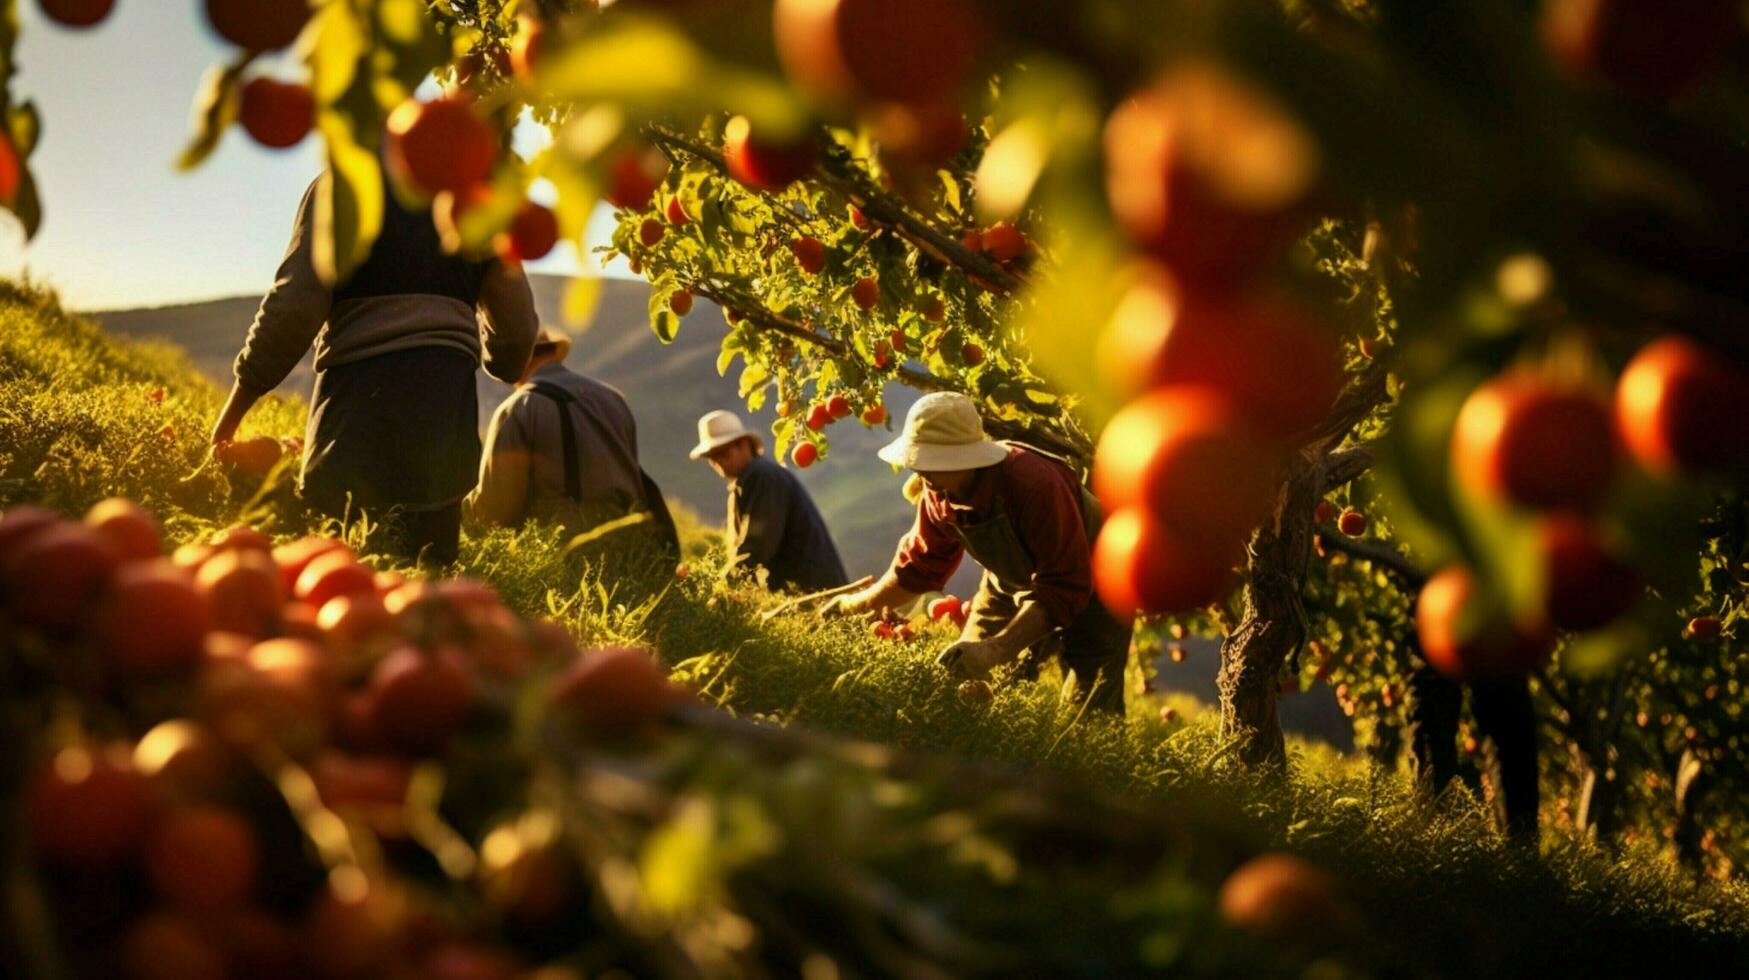 boeren oogsten vers fruit in de herfst zonlicht warmte foto